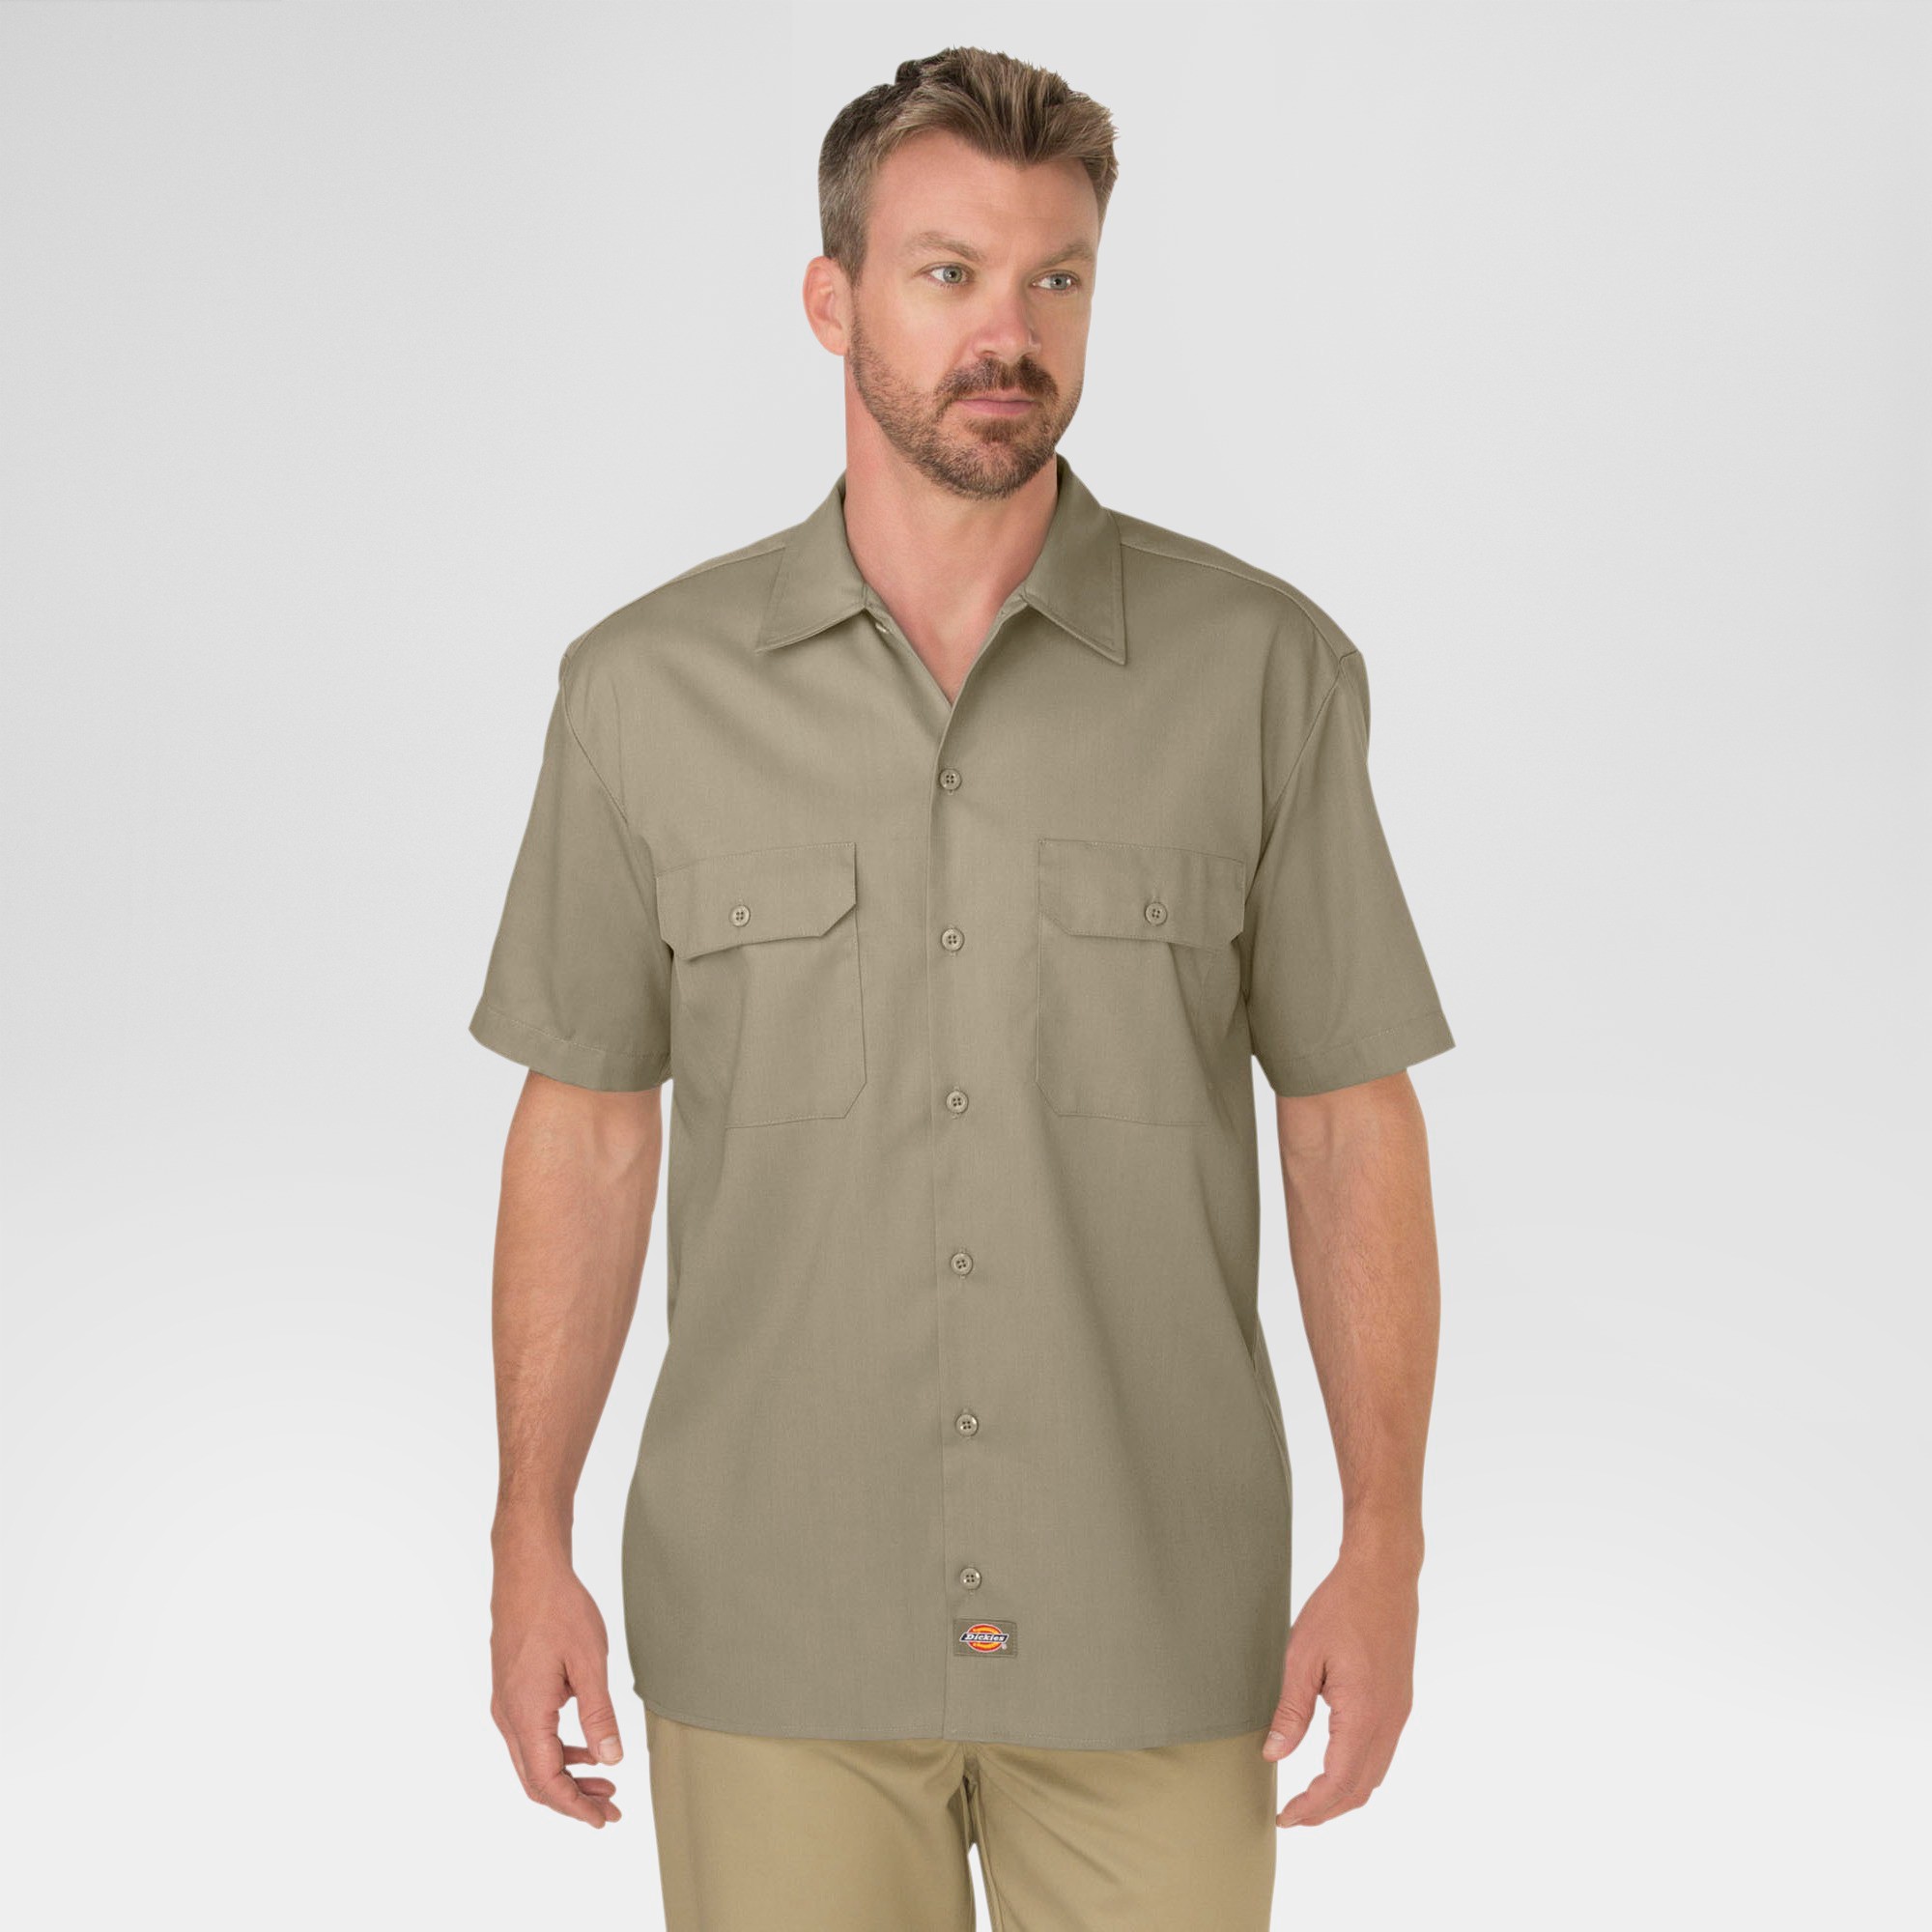 petiteDickies Men's Big & Tall Original Fit Short Sleeve Twill Work Shirt- Khaki XXXL, Green